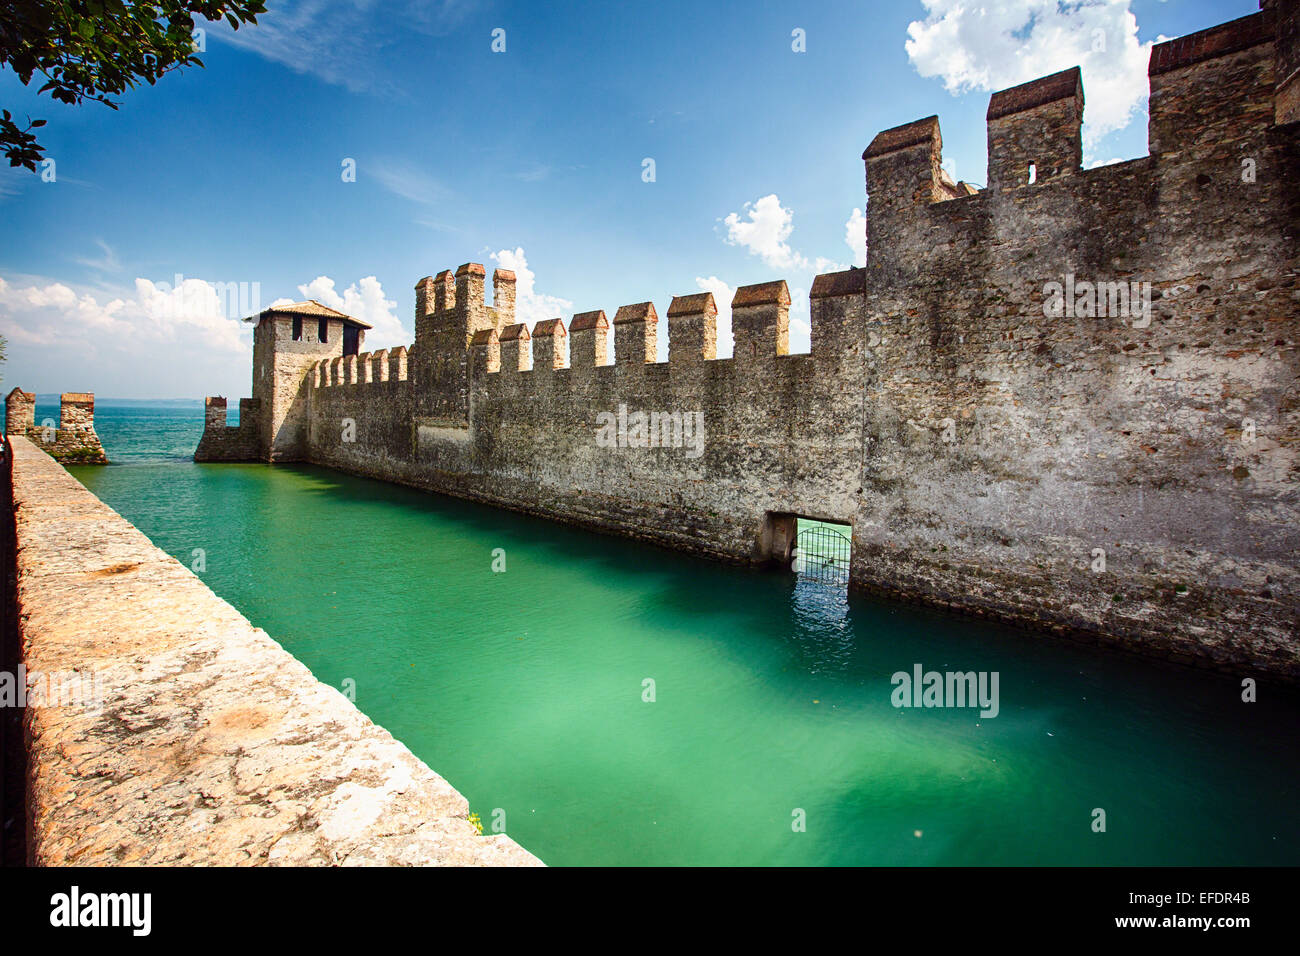 Low Angle View of a Castle dans le lac, Château Scaliger, Sirmione, Lac de Garde, Lombardie, Italie Banque D'Images